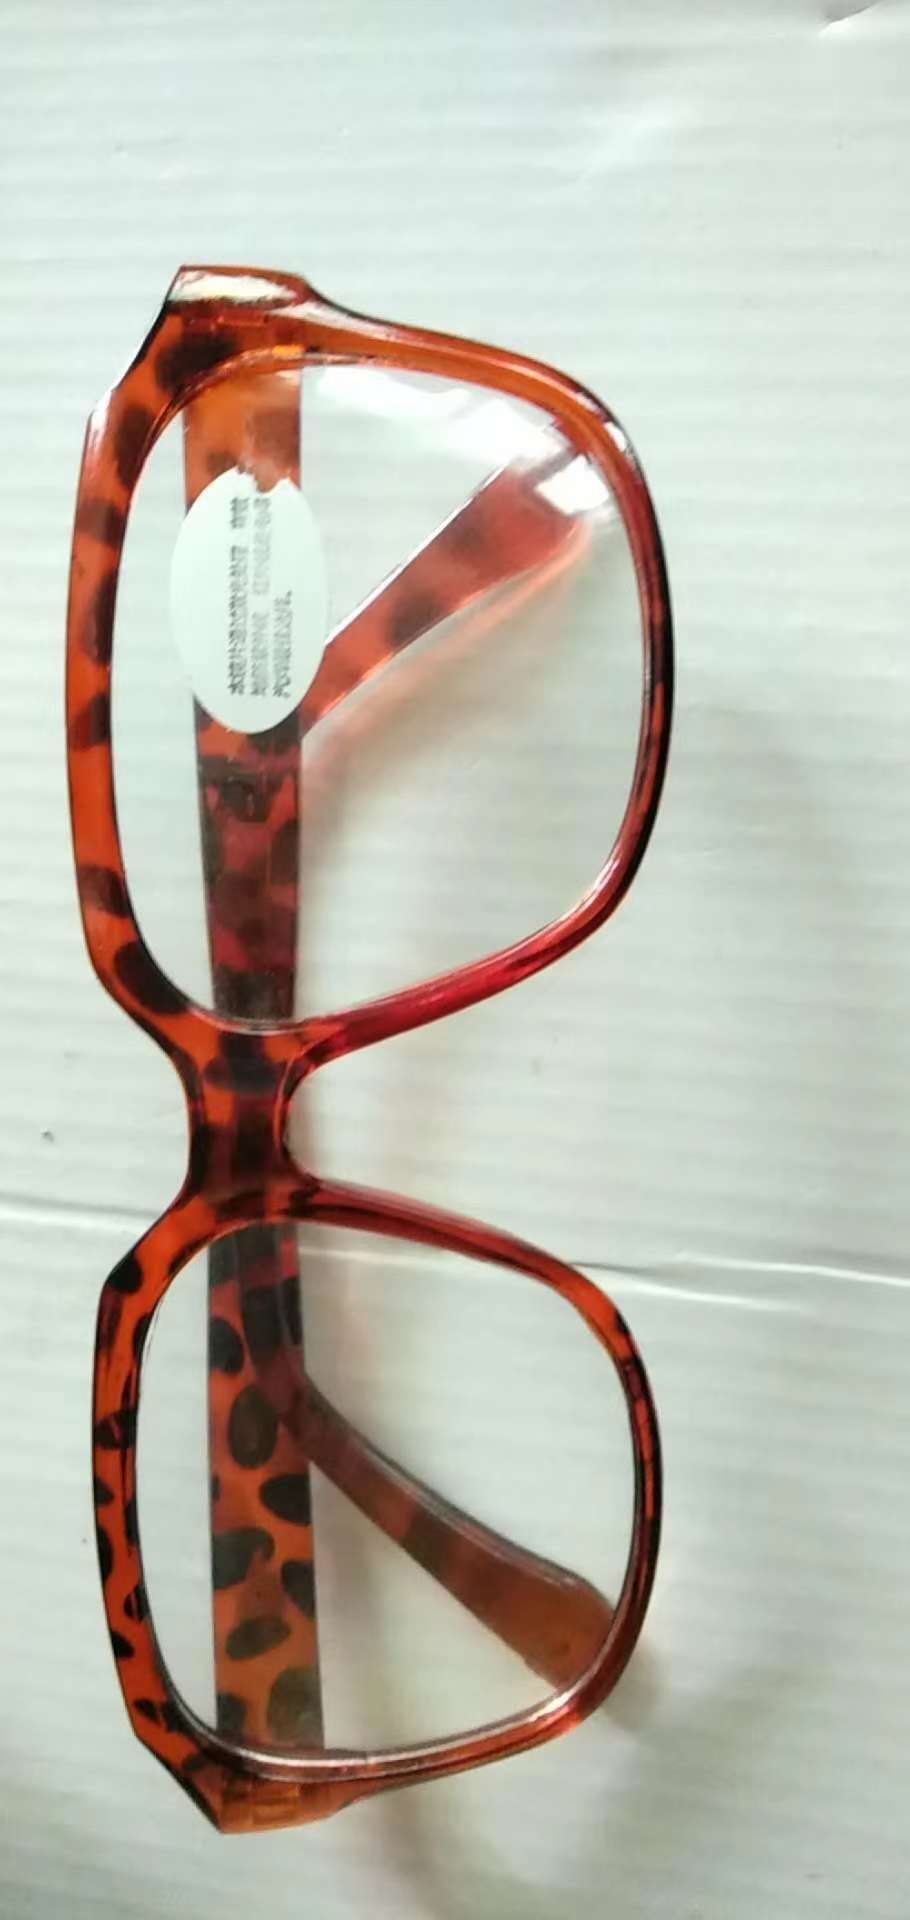 防紫外线电焊眼镜